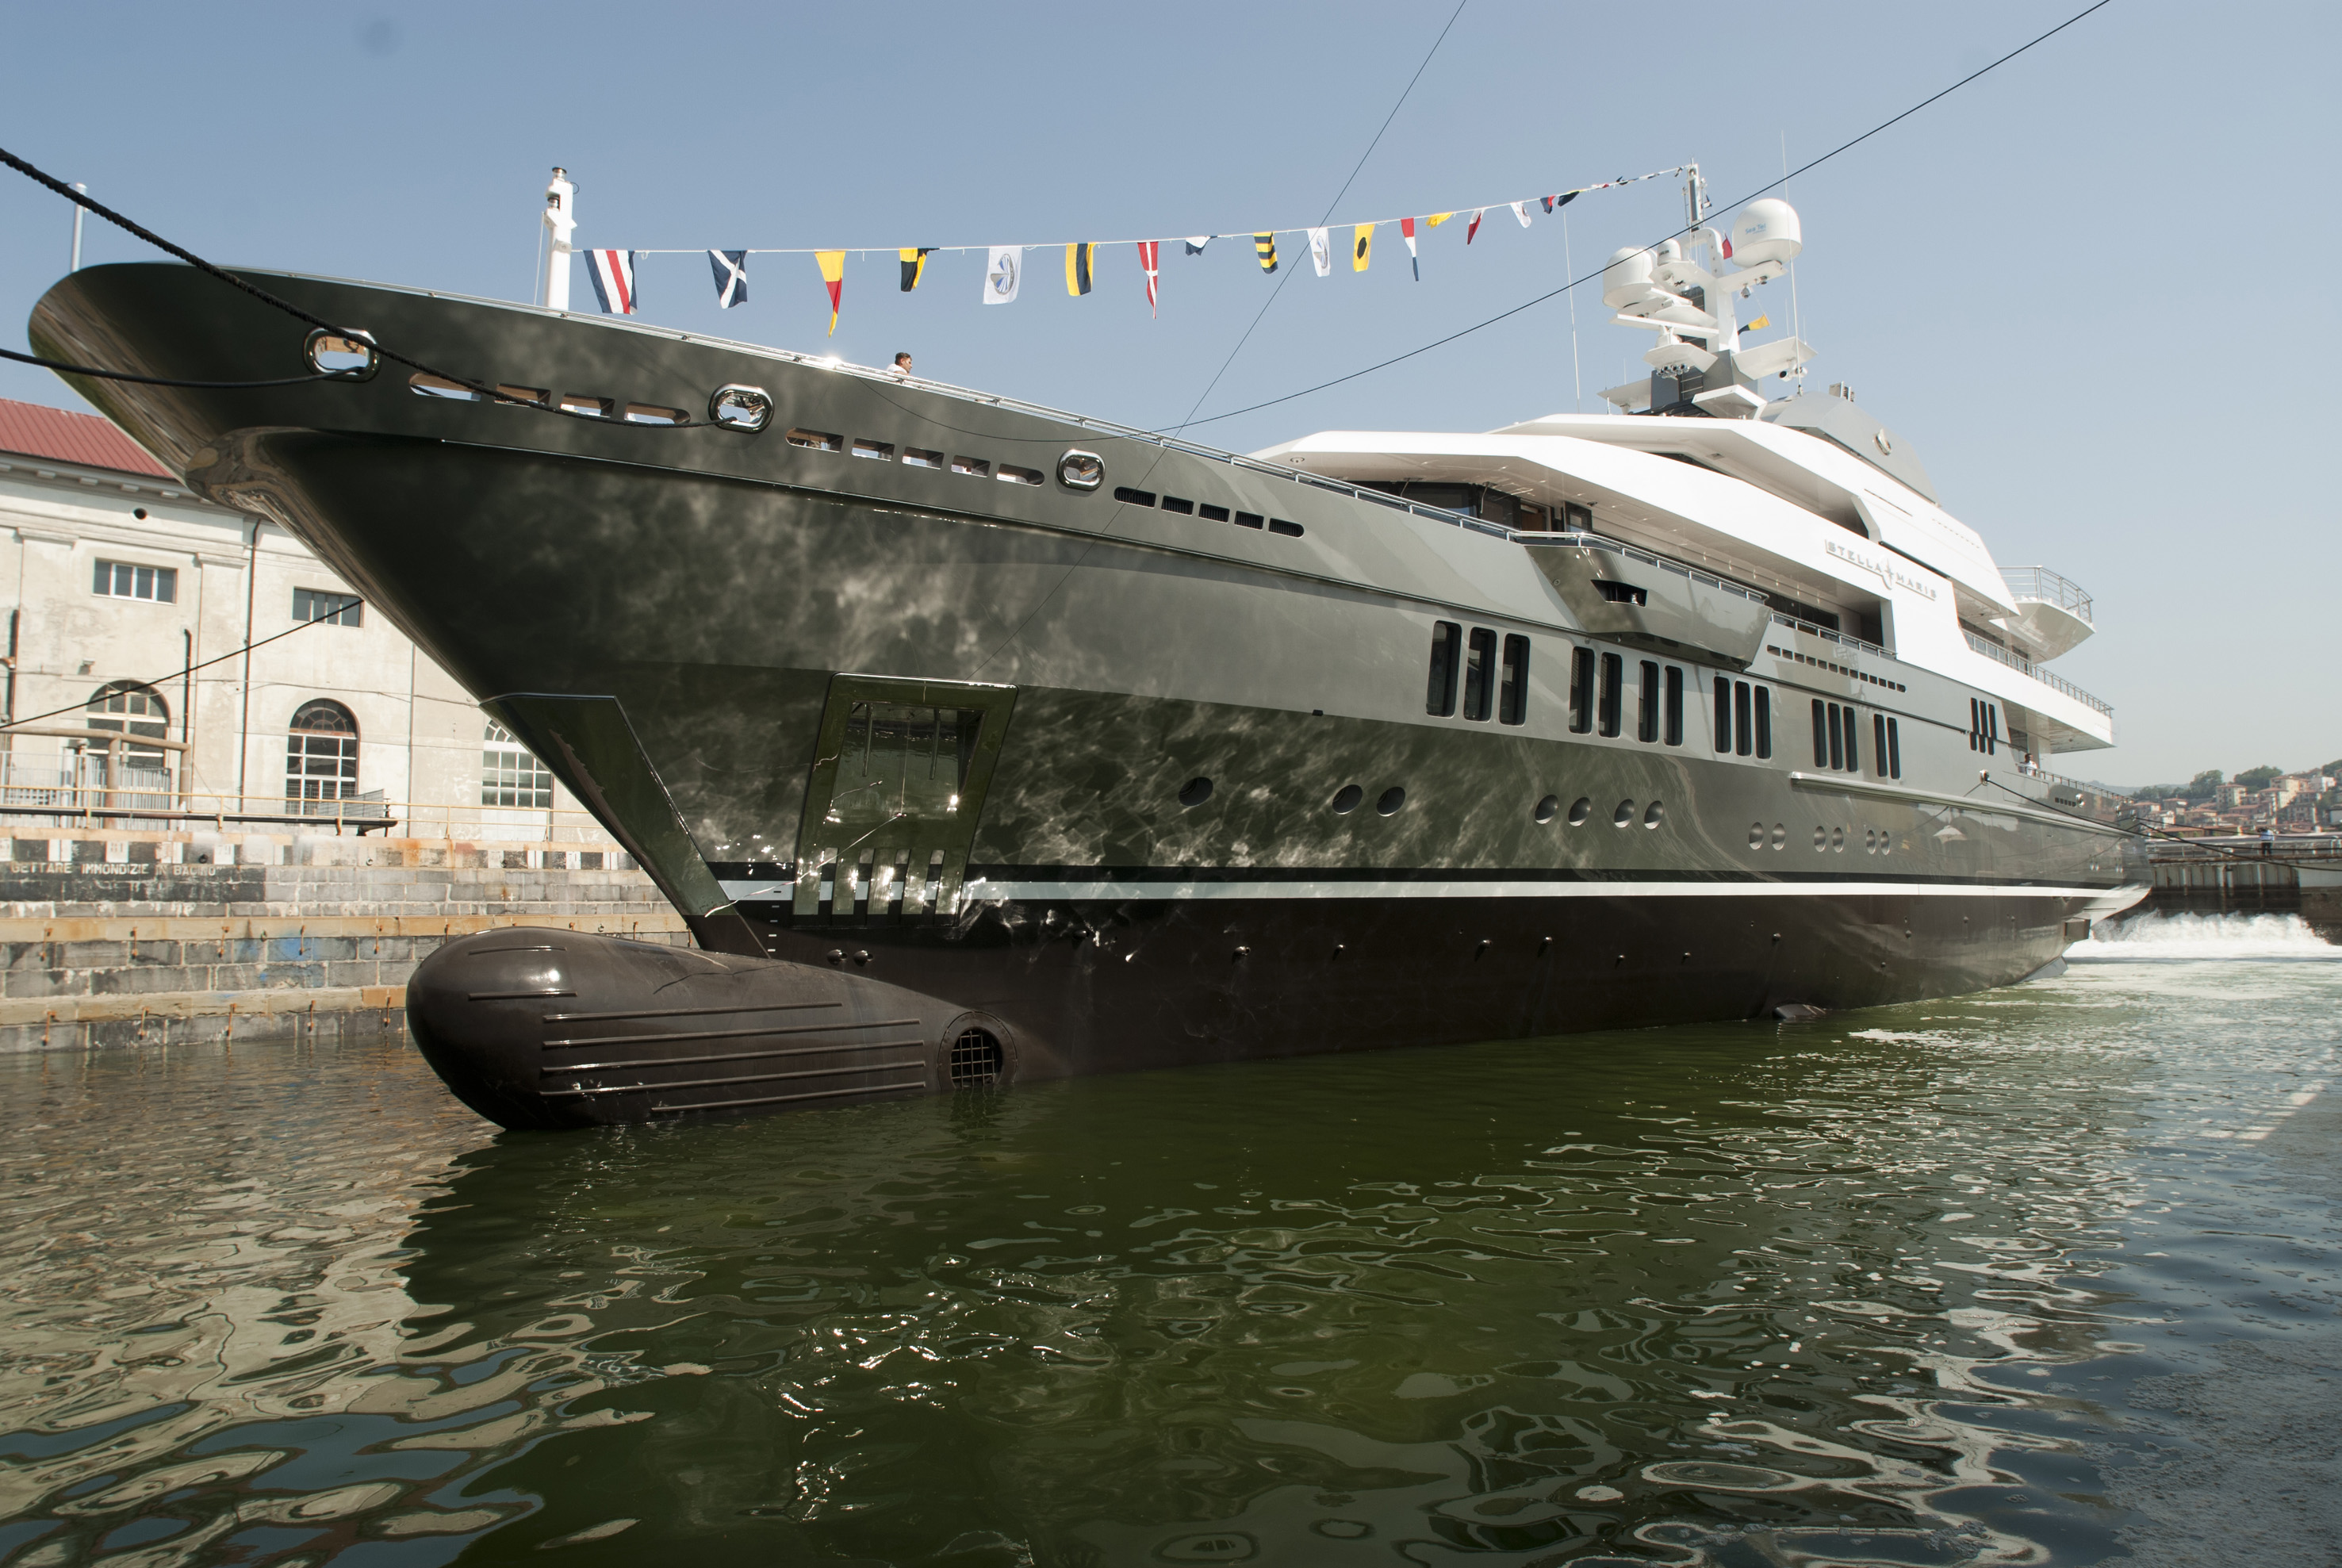 stella maris super yacht